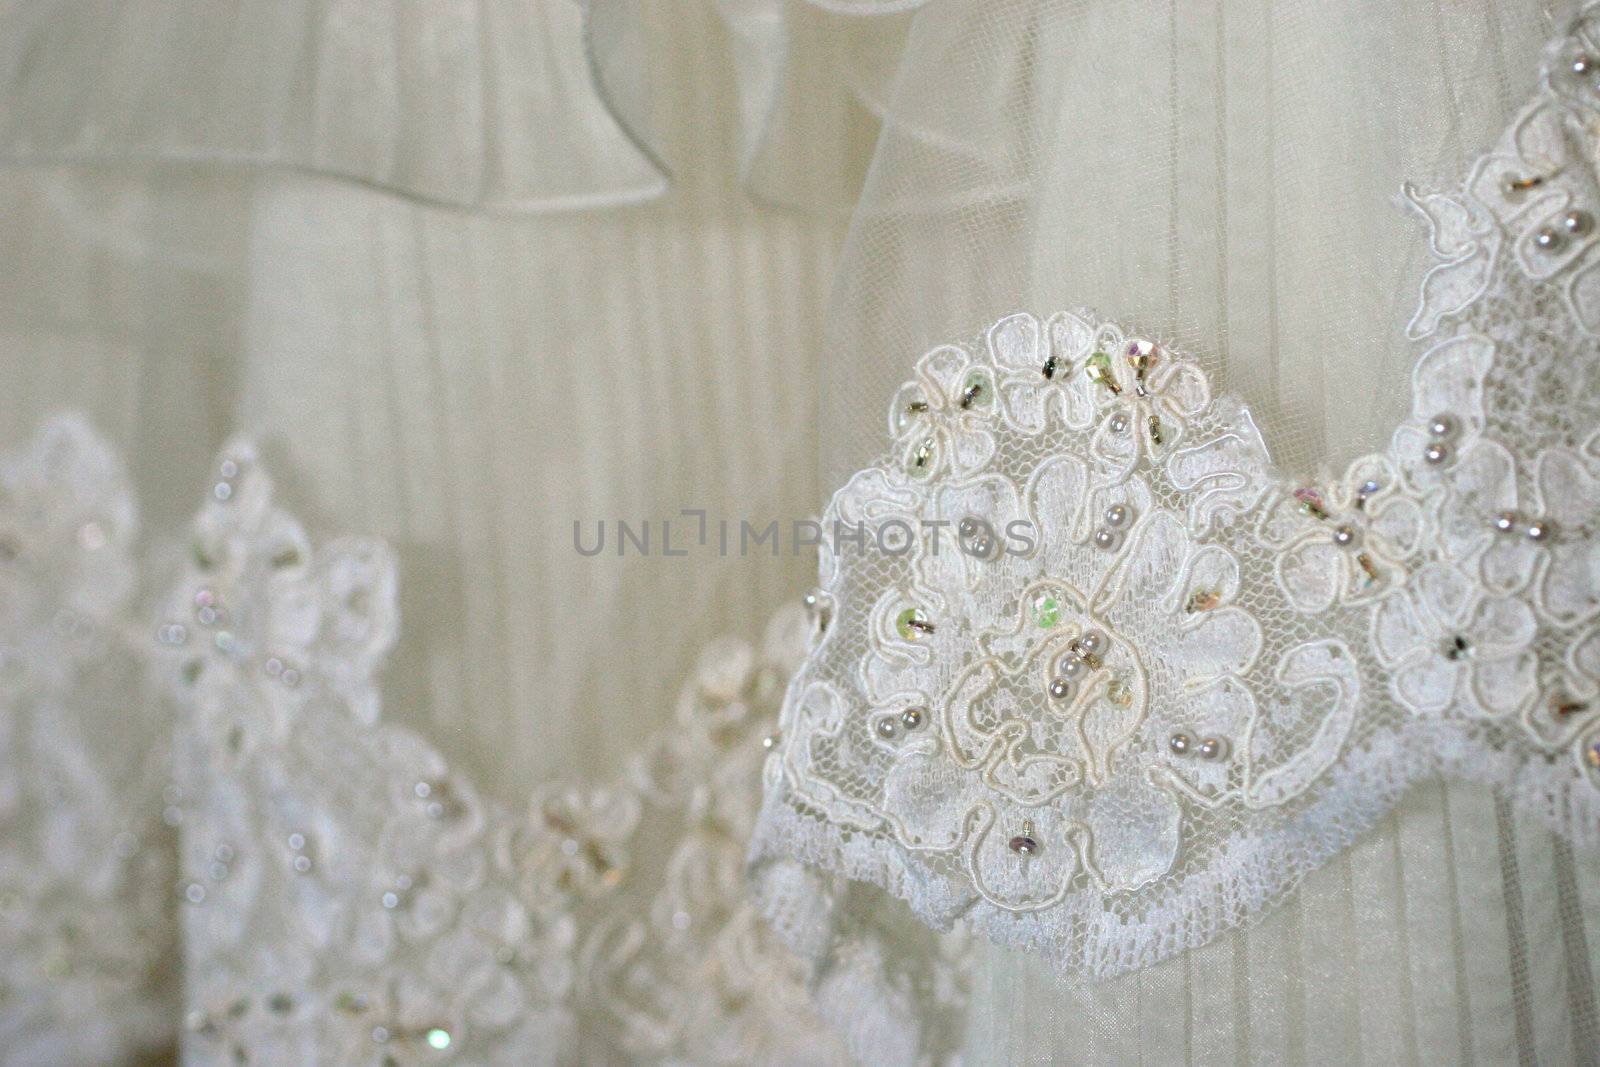 Details of a wedding dress